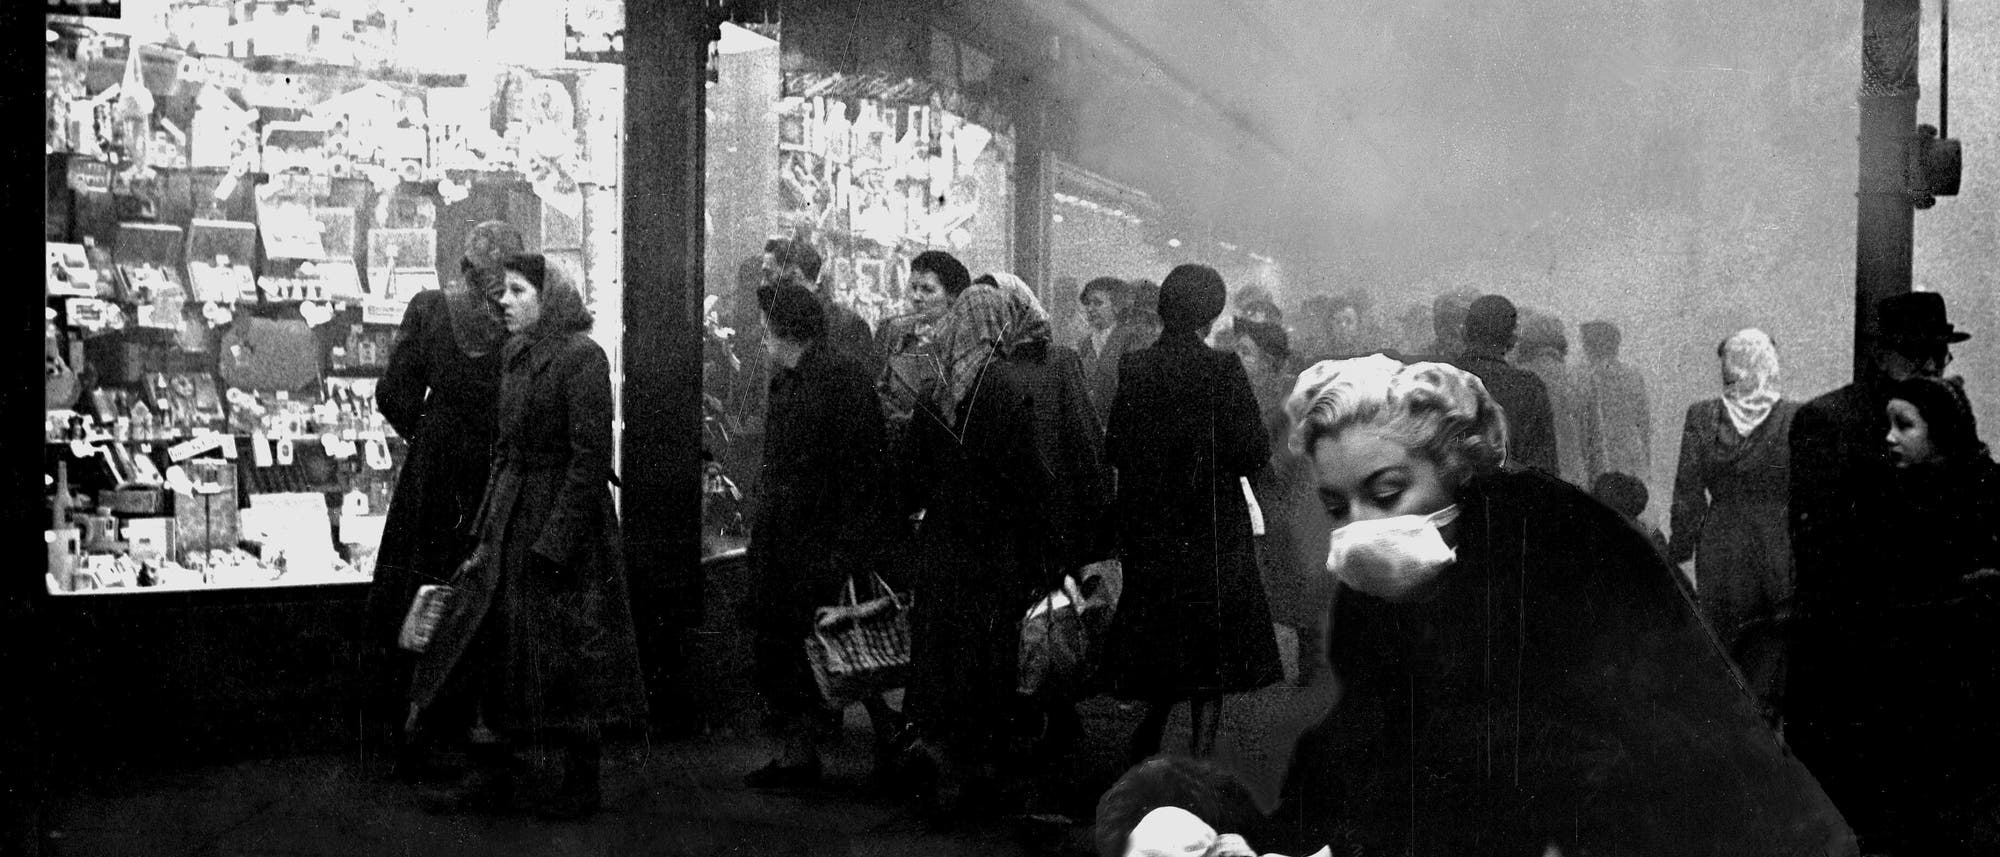 Straße in London Anfang Dezember 1952: Die Stadt war eingehüllt von einer giftigen Smogwolke.